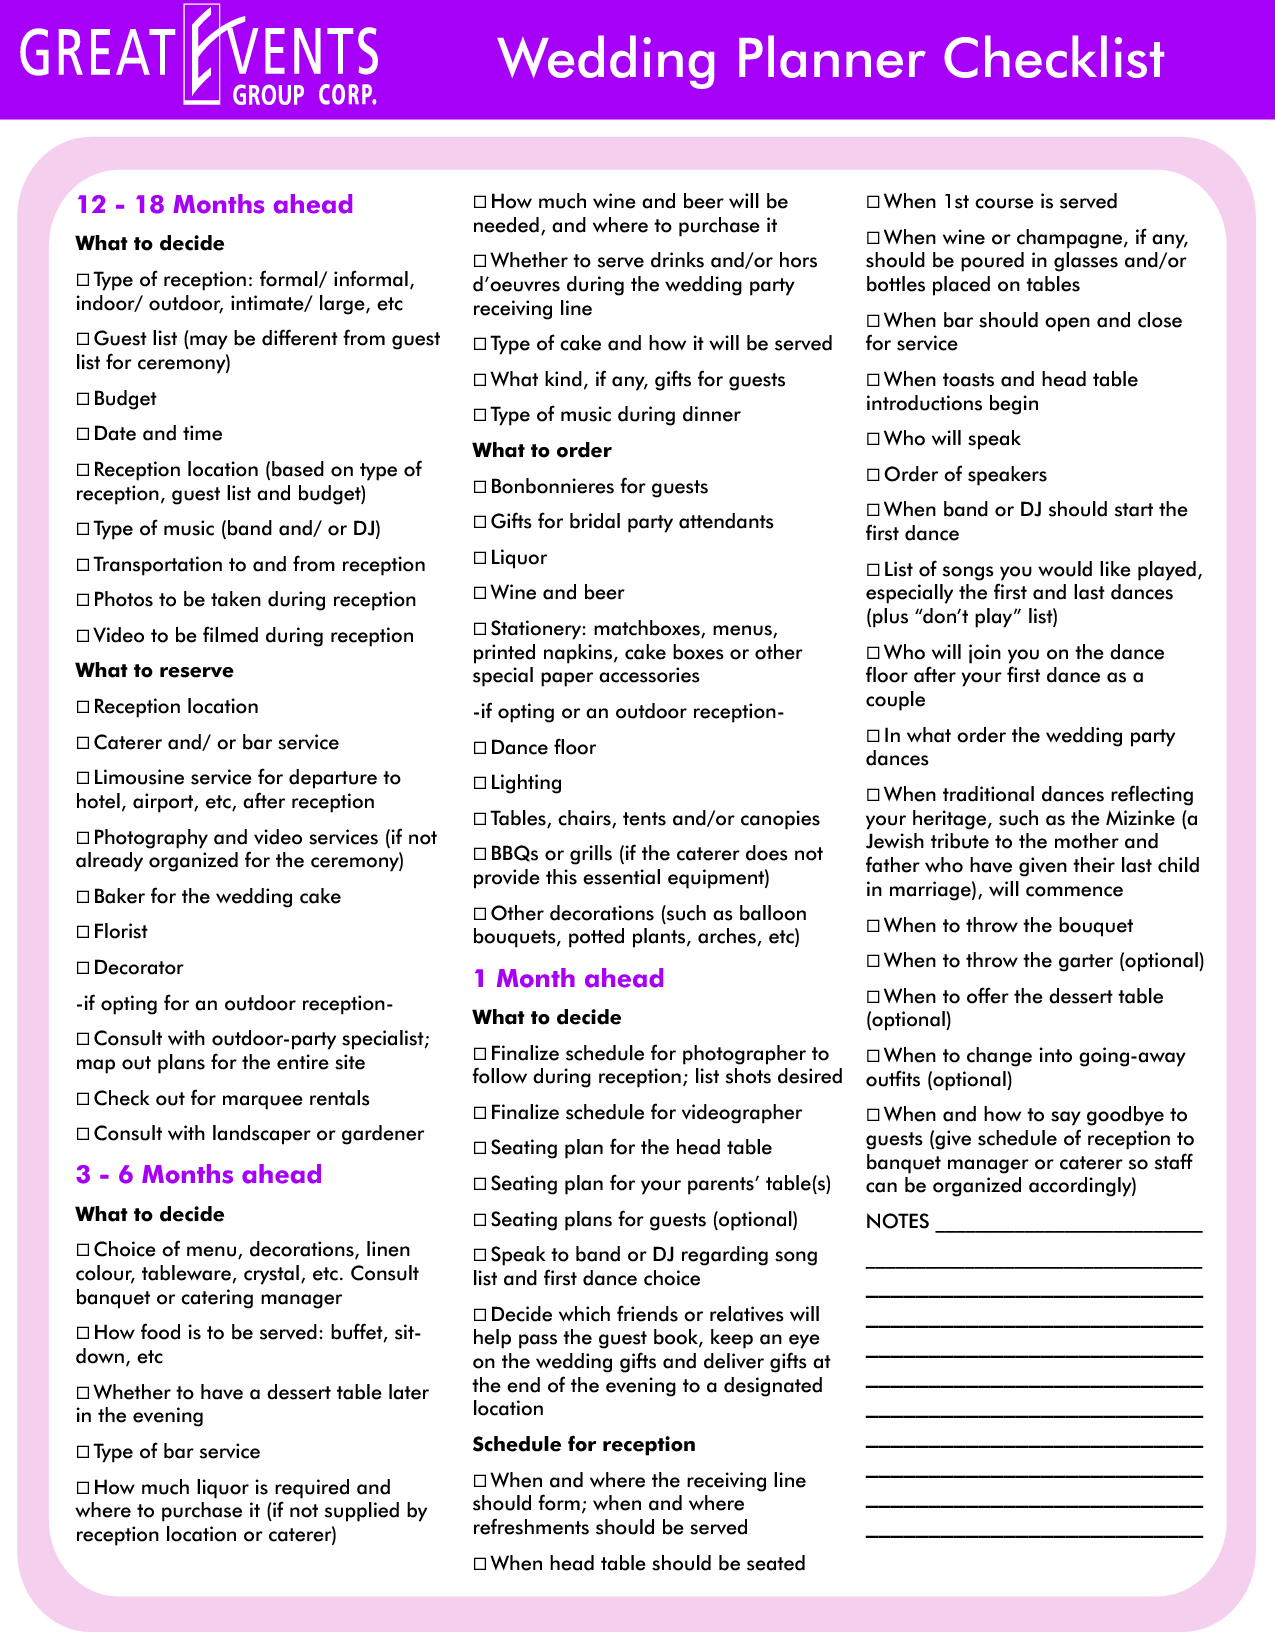 Wedding Planning Checklist Template